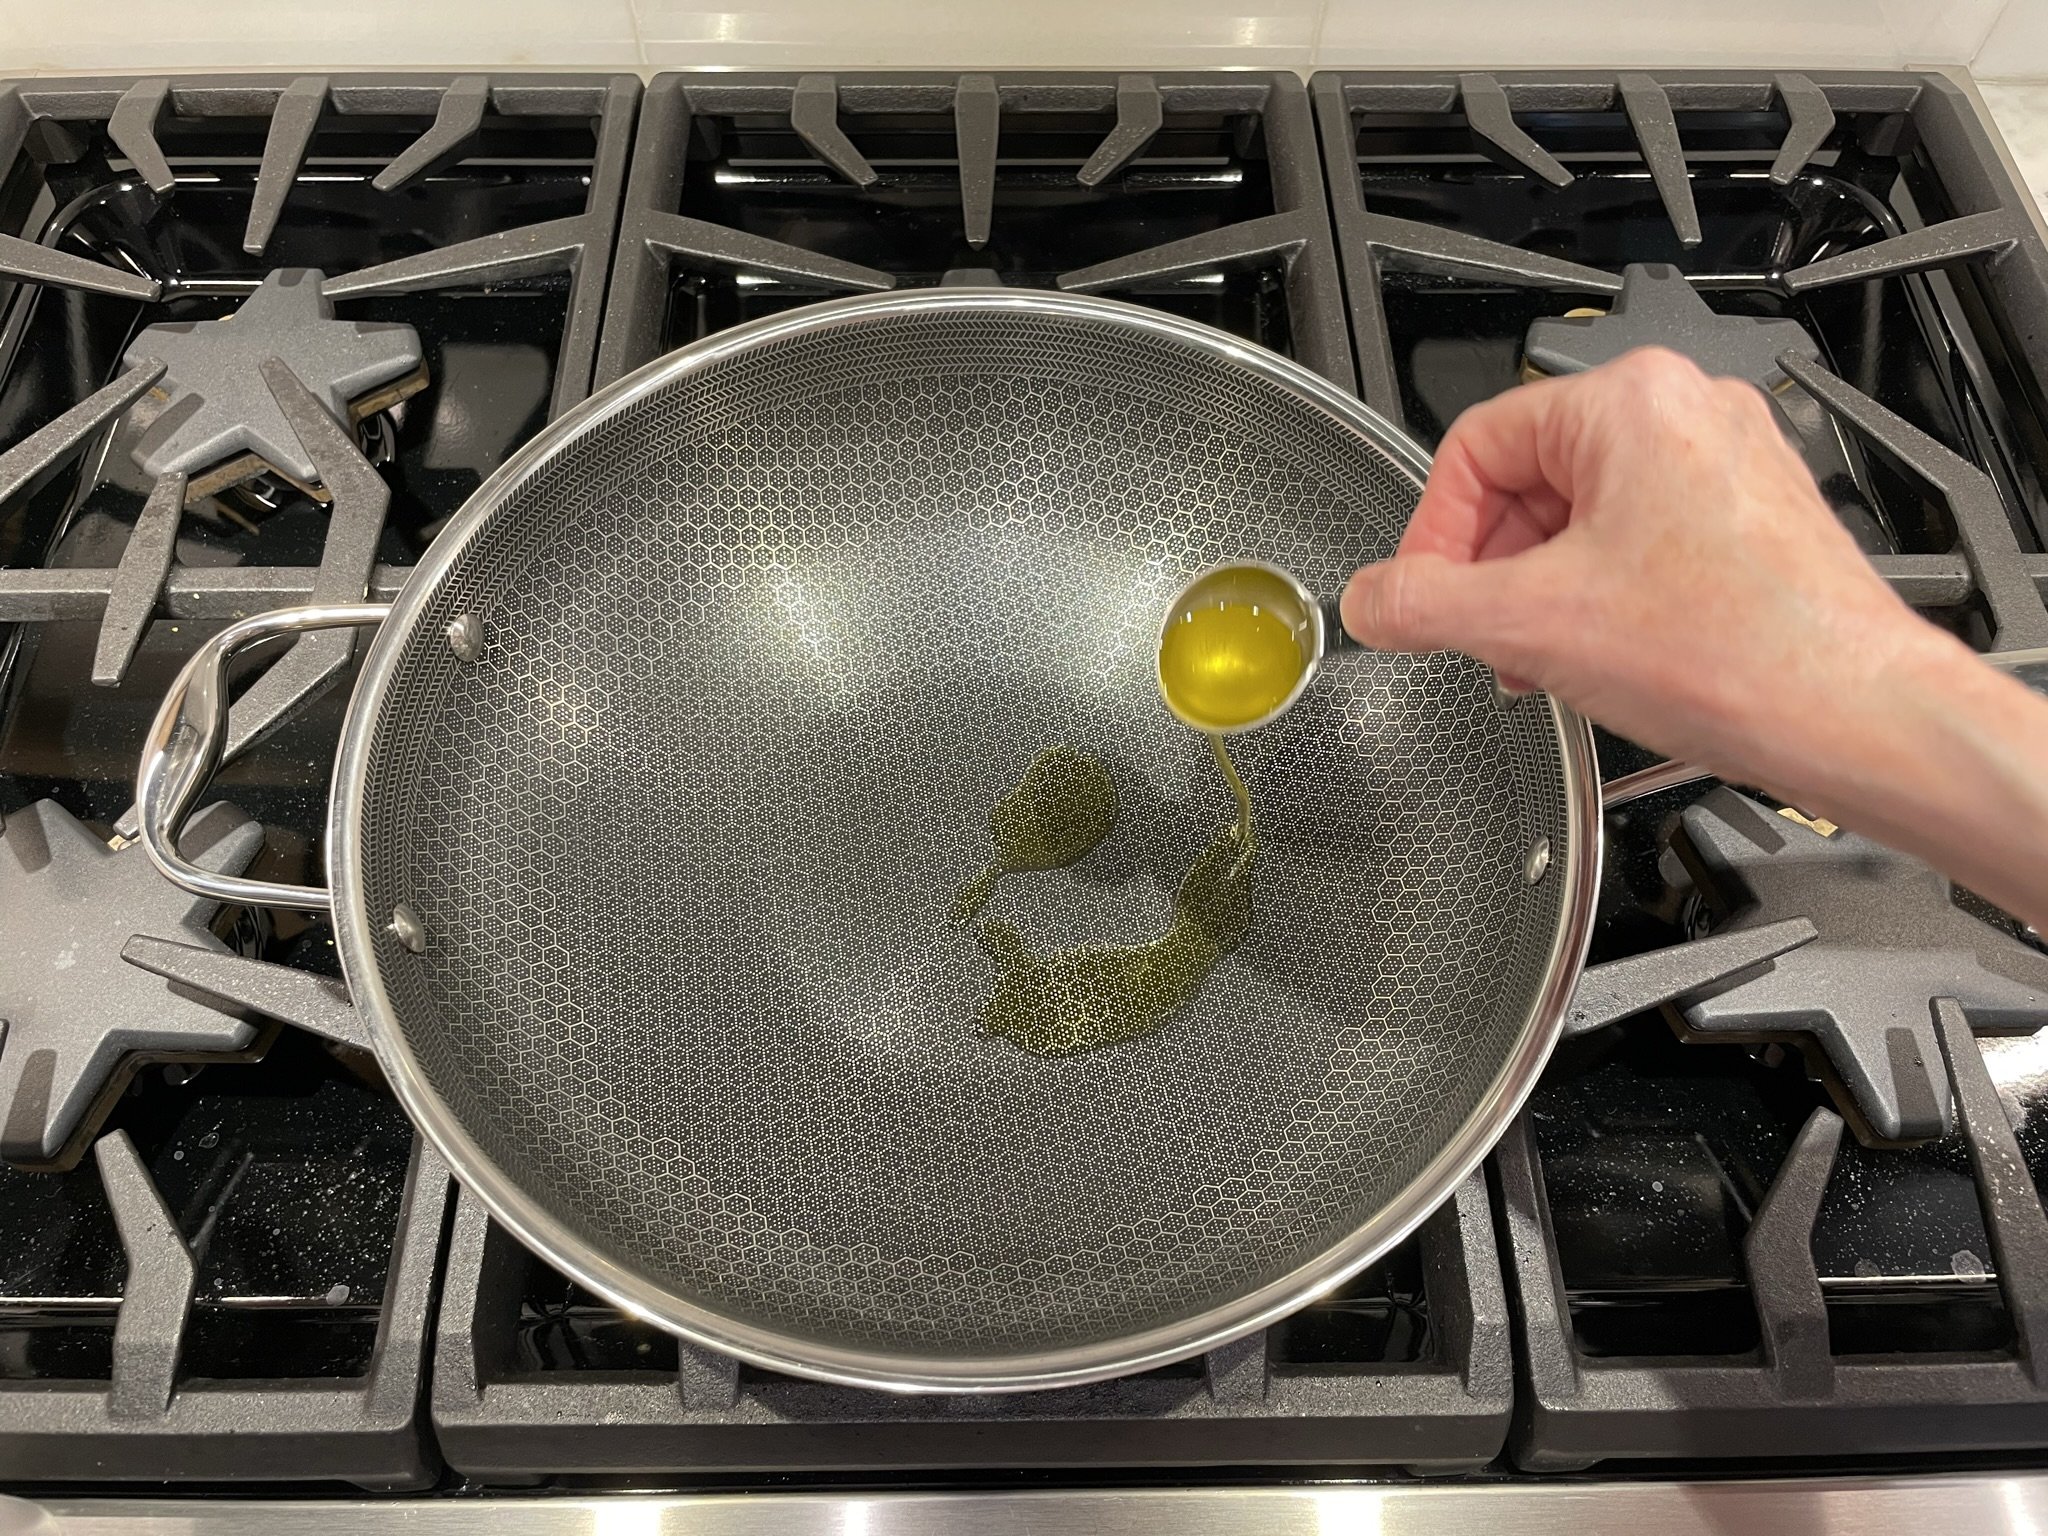 Add olive oil.